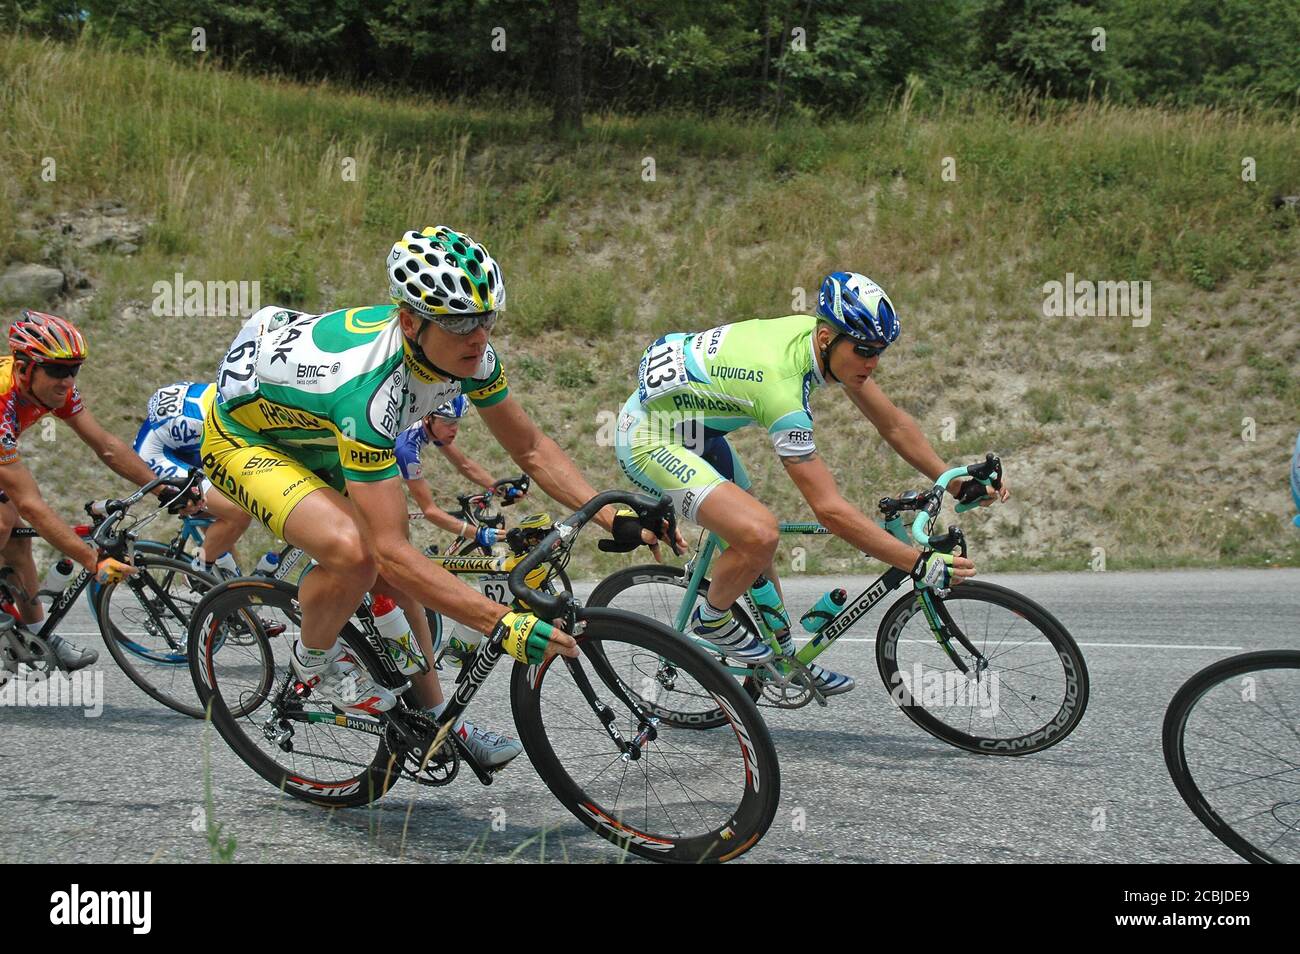 Bert Grabsch,(Vordergrund - Nummer 62) der deutsche Rennradprofi bei der Tour de France 2005 - Etappe 11: Courchevel - Briançon. Stockfoto